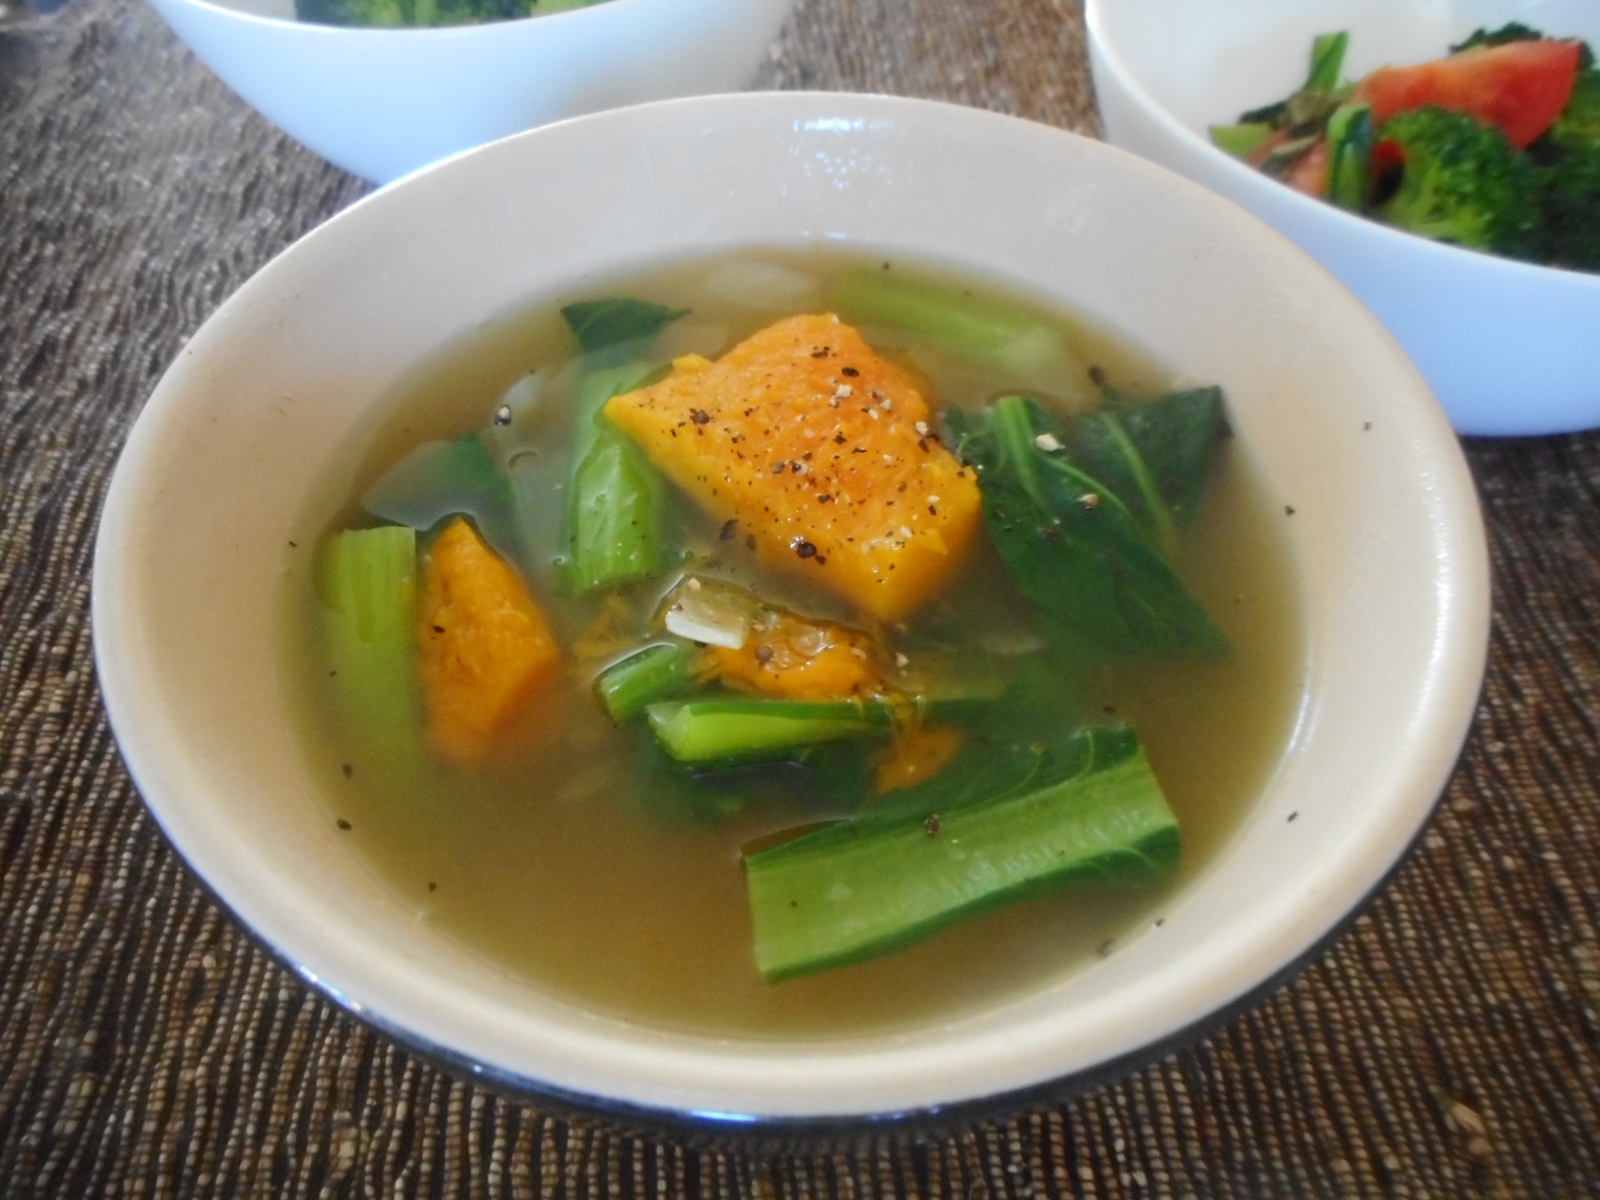 カボチャと小松菜のスープ